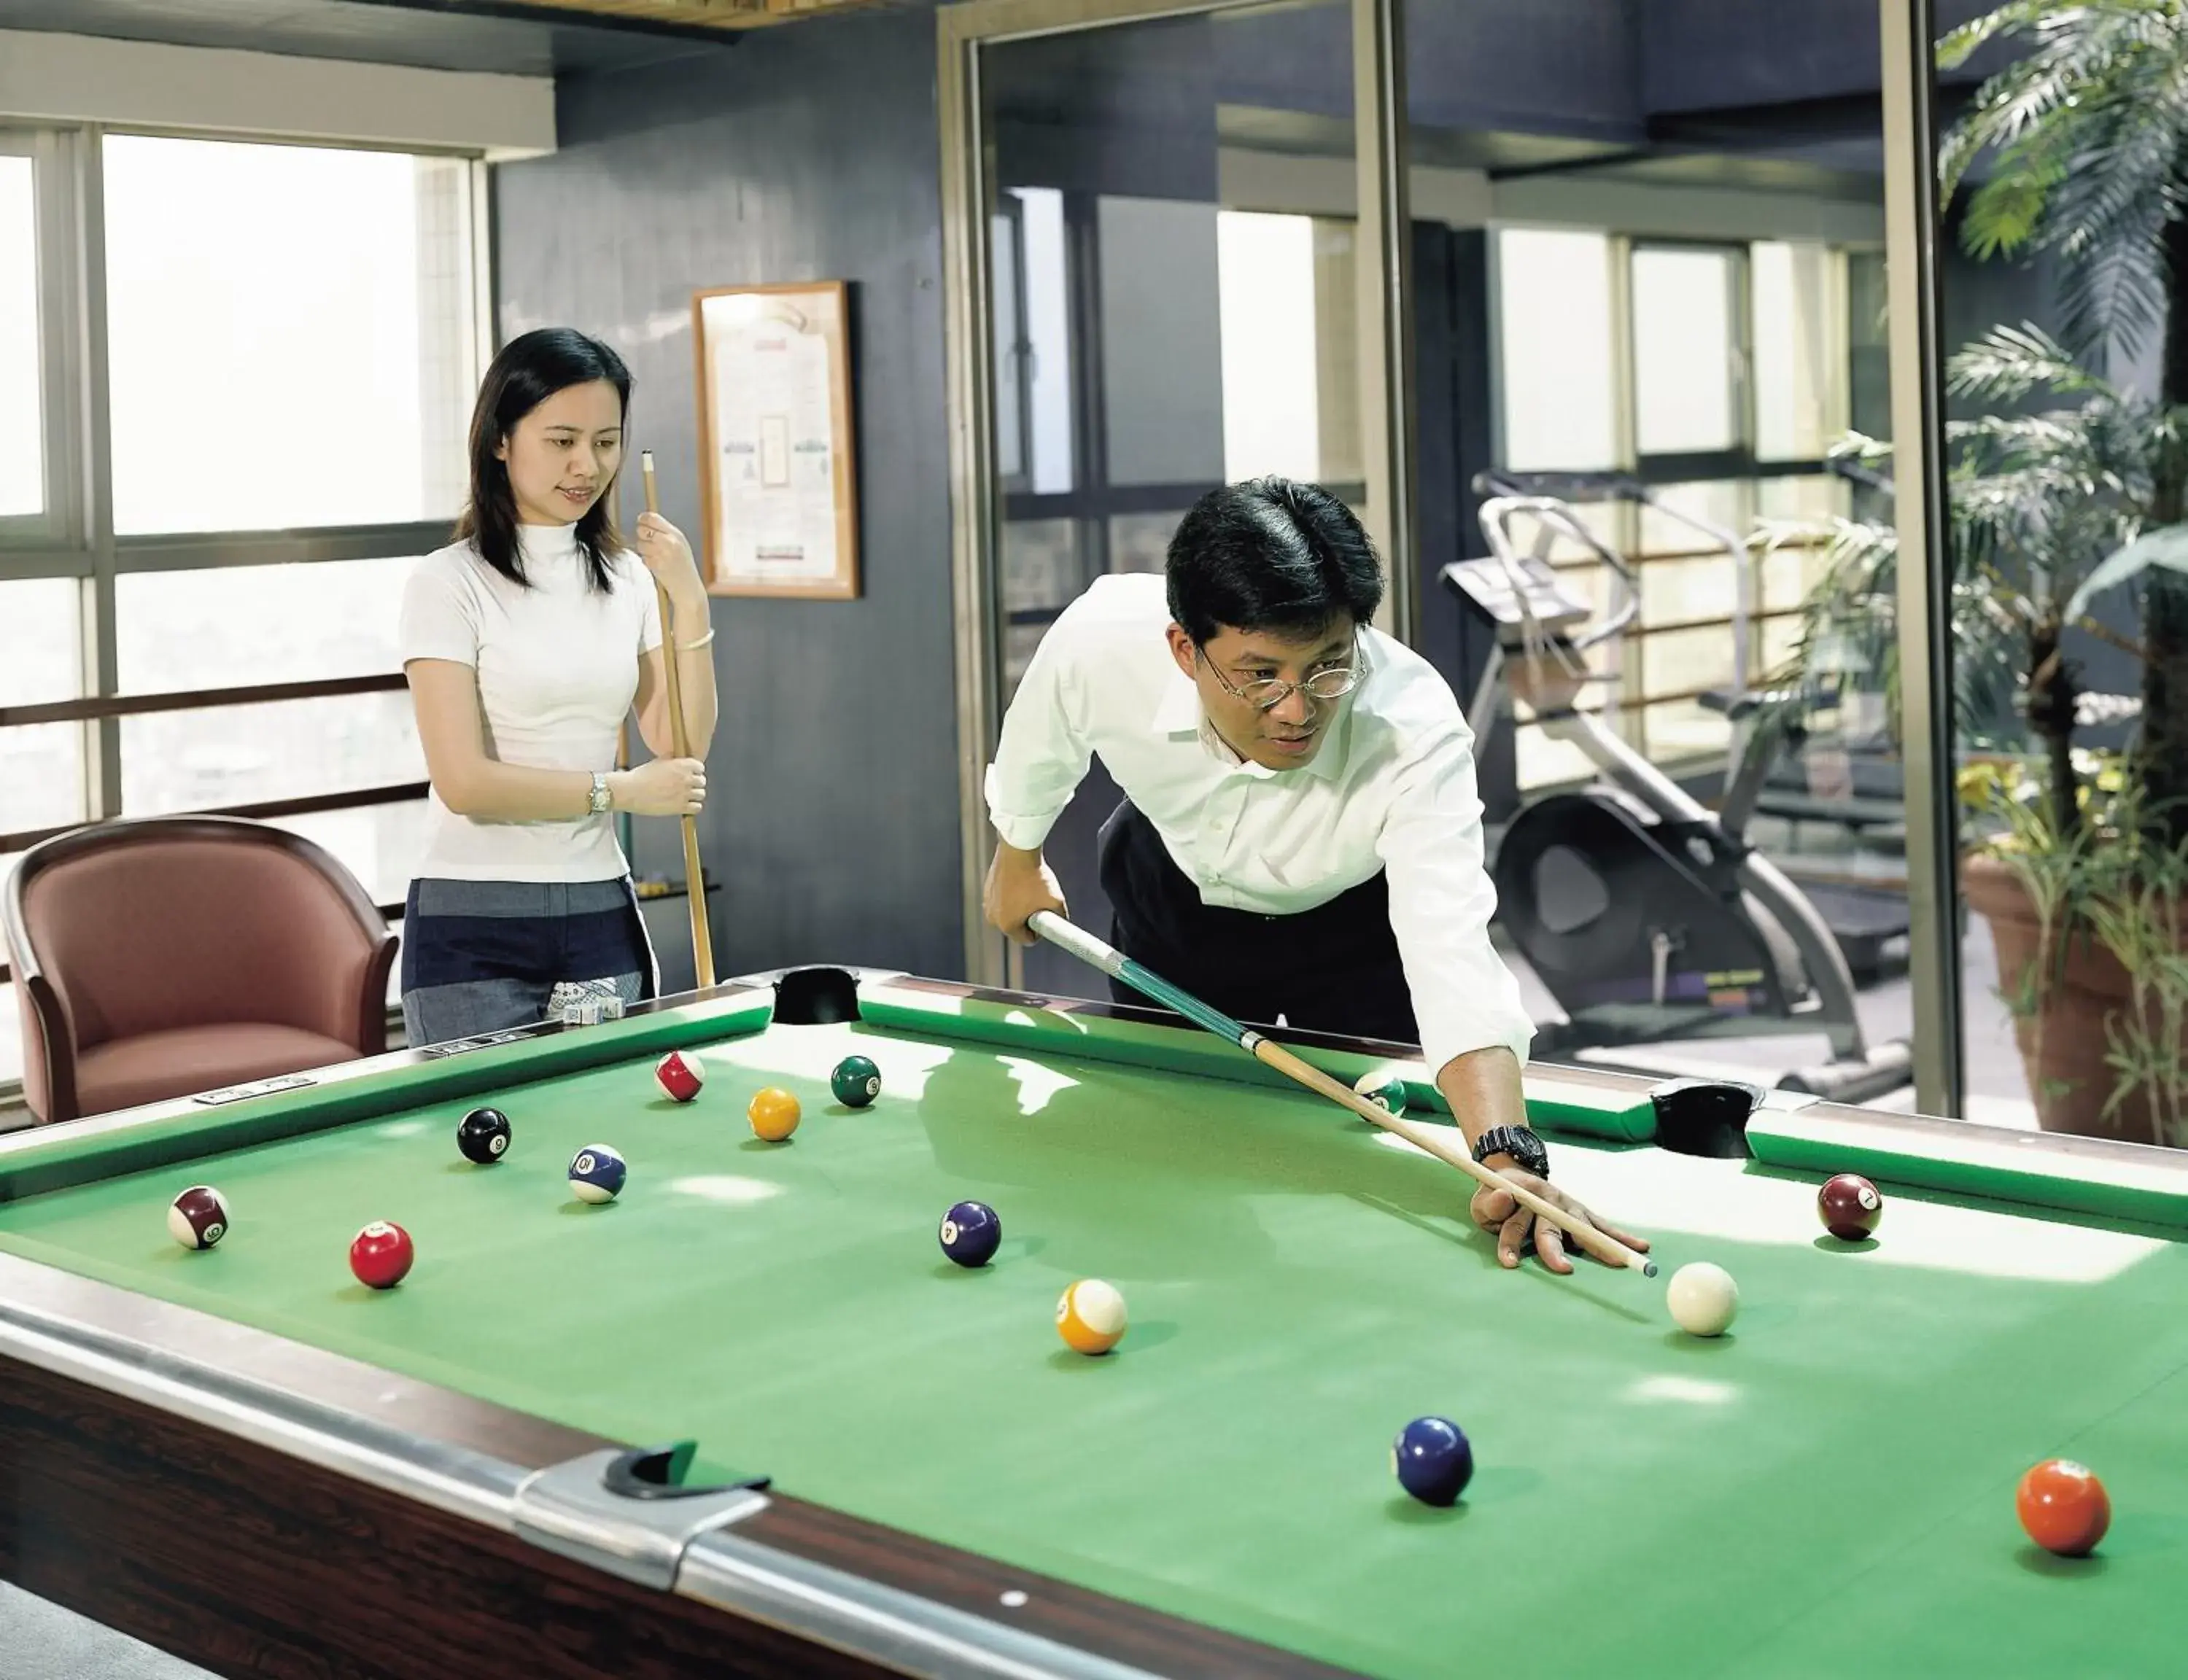 Game Room, Billiards in Kavalan Hotel